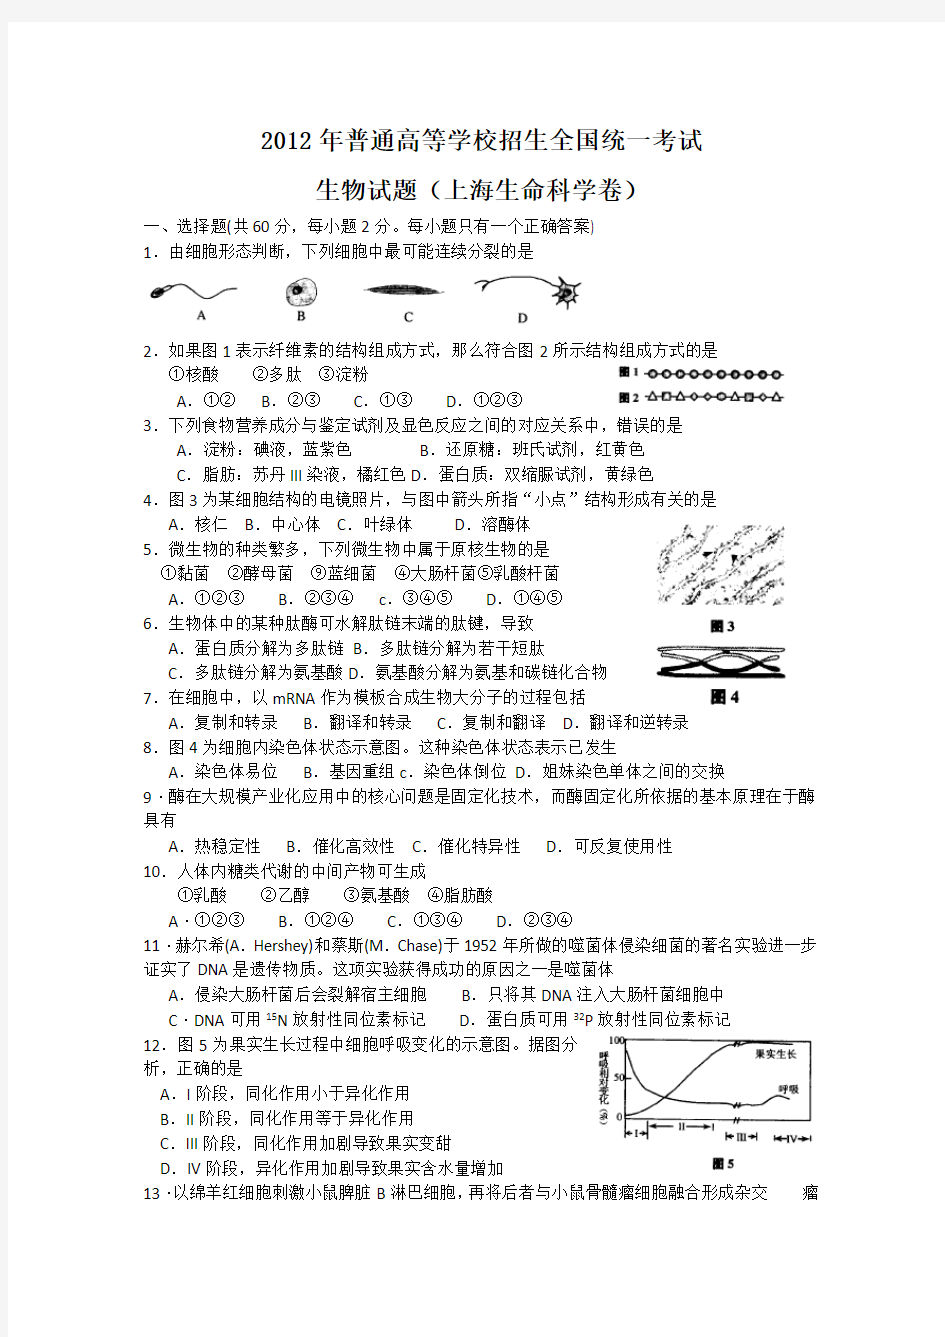 生物高考试题答案及解析-上海